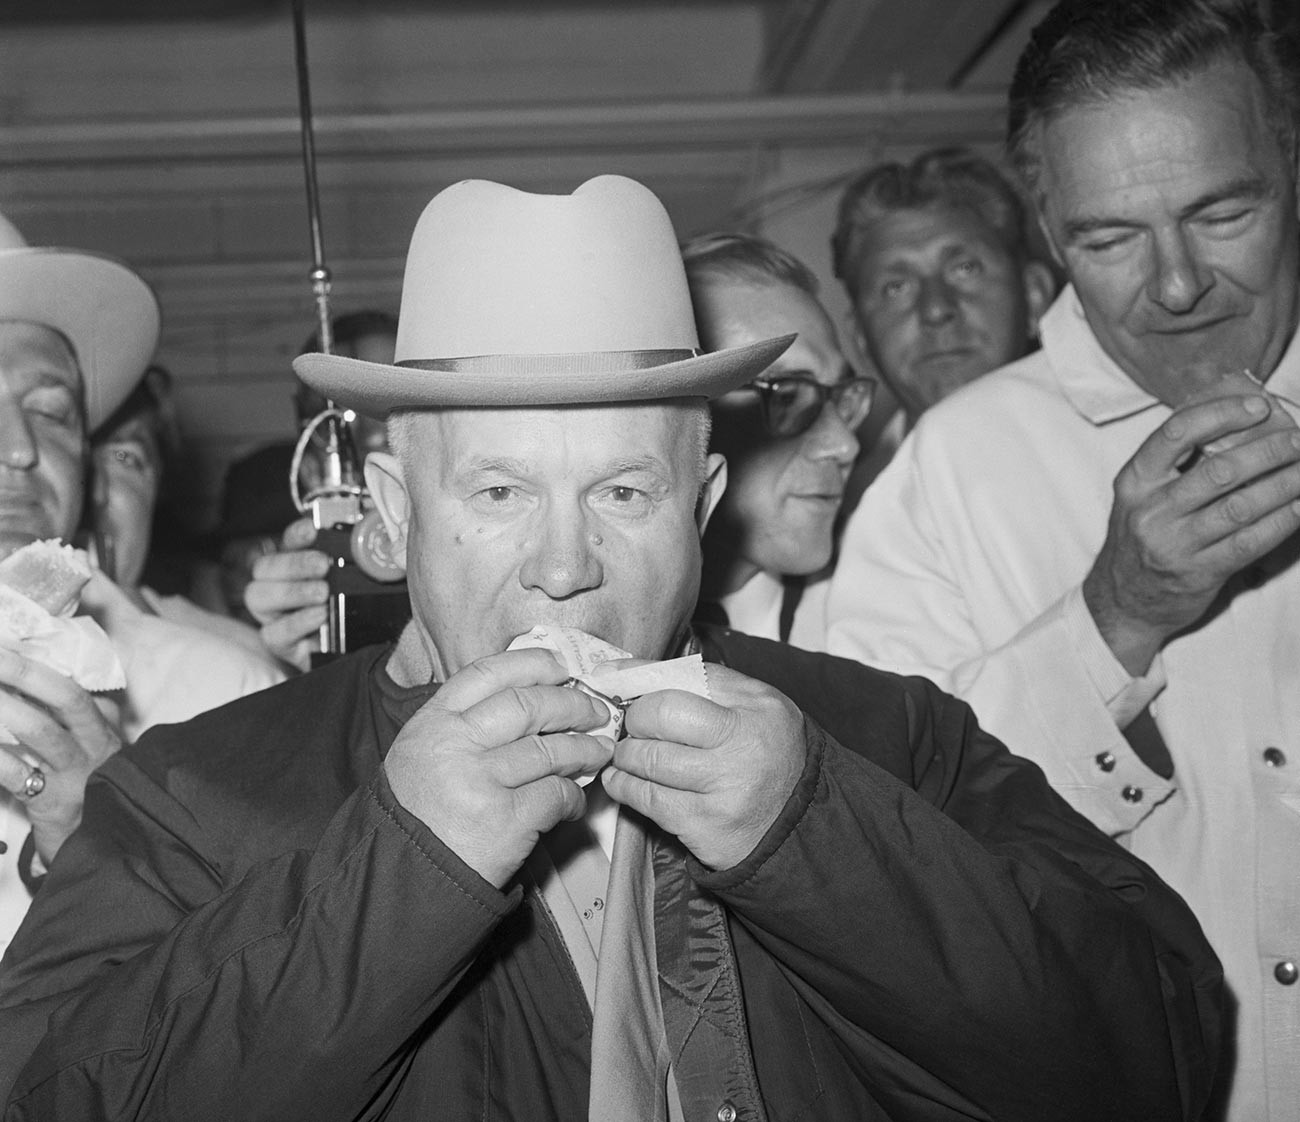 Никита Хрушчов први пут проба амерички хот дог са сенфом. Када је појео све, питали су га шта мисли, а он је одговорио: „ОК, одлично, изванредно“, али је додао да порција није довољно велика.